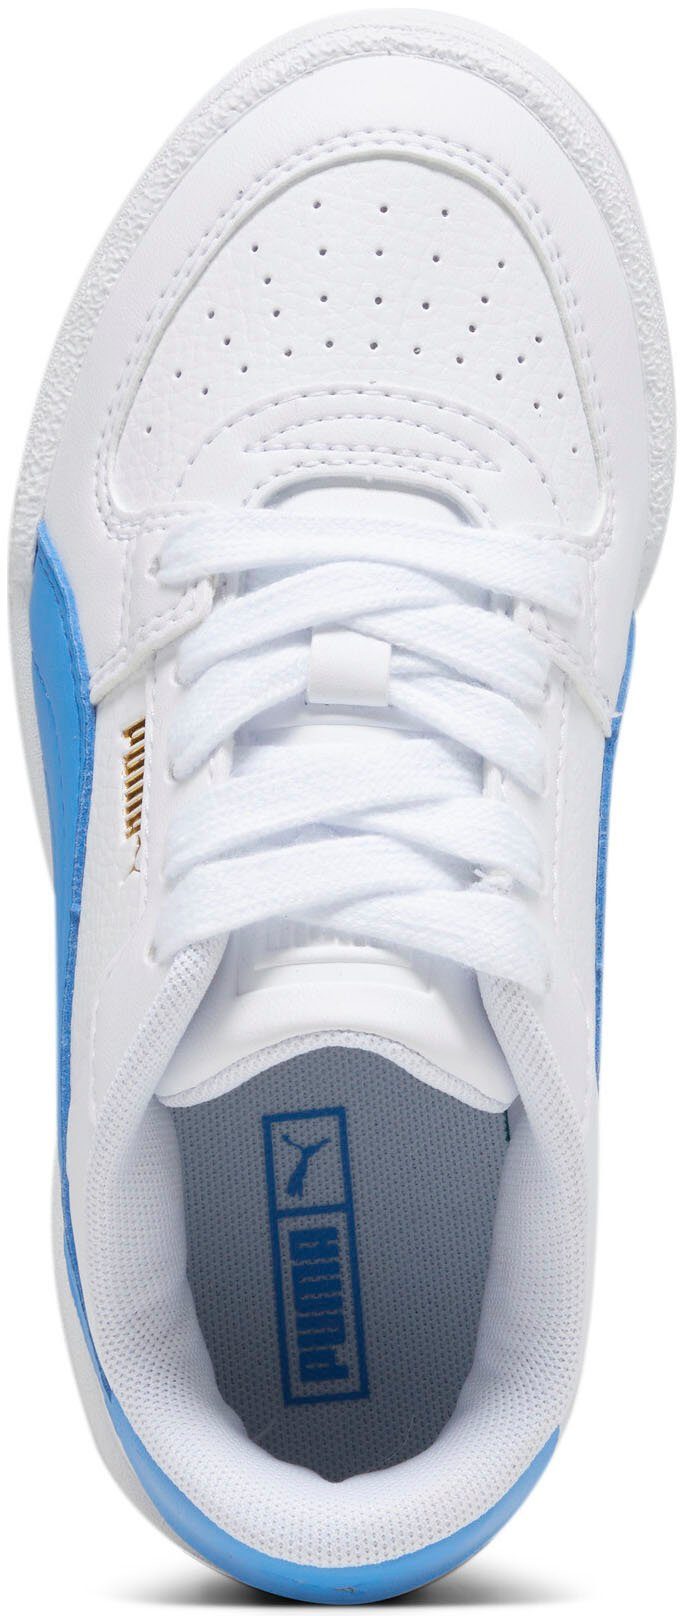 PUMA PS CLASSIC Blue CA PRO PUMA White-Regal Sneaker